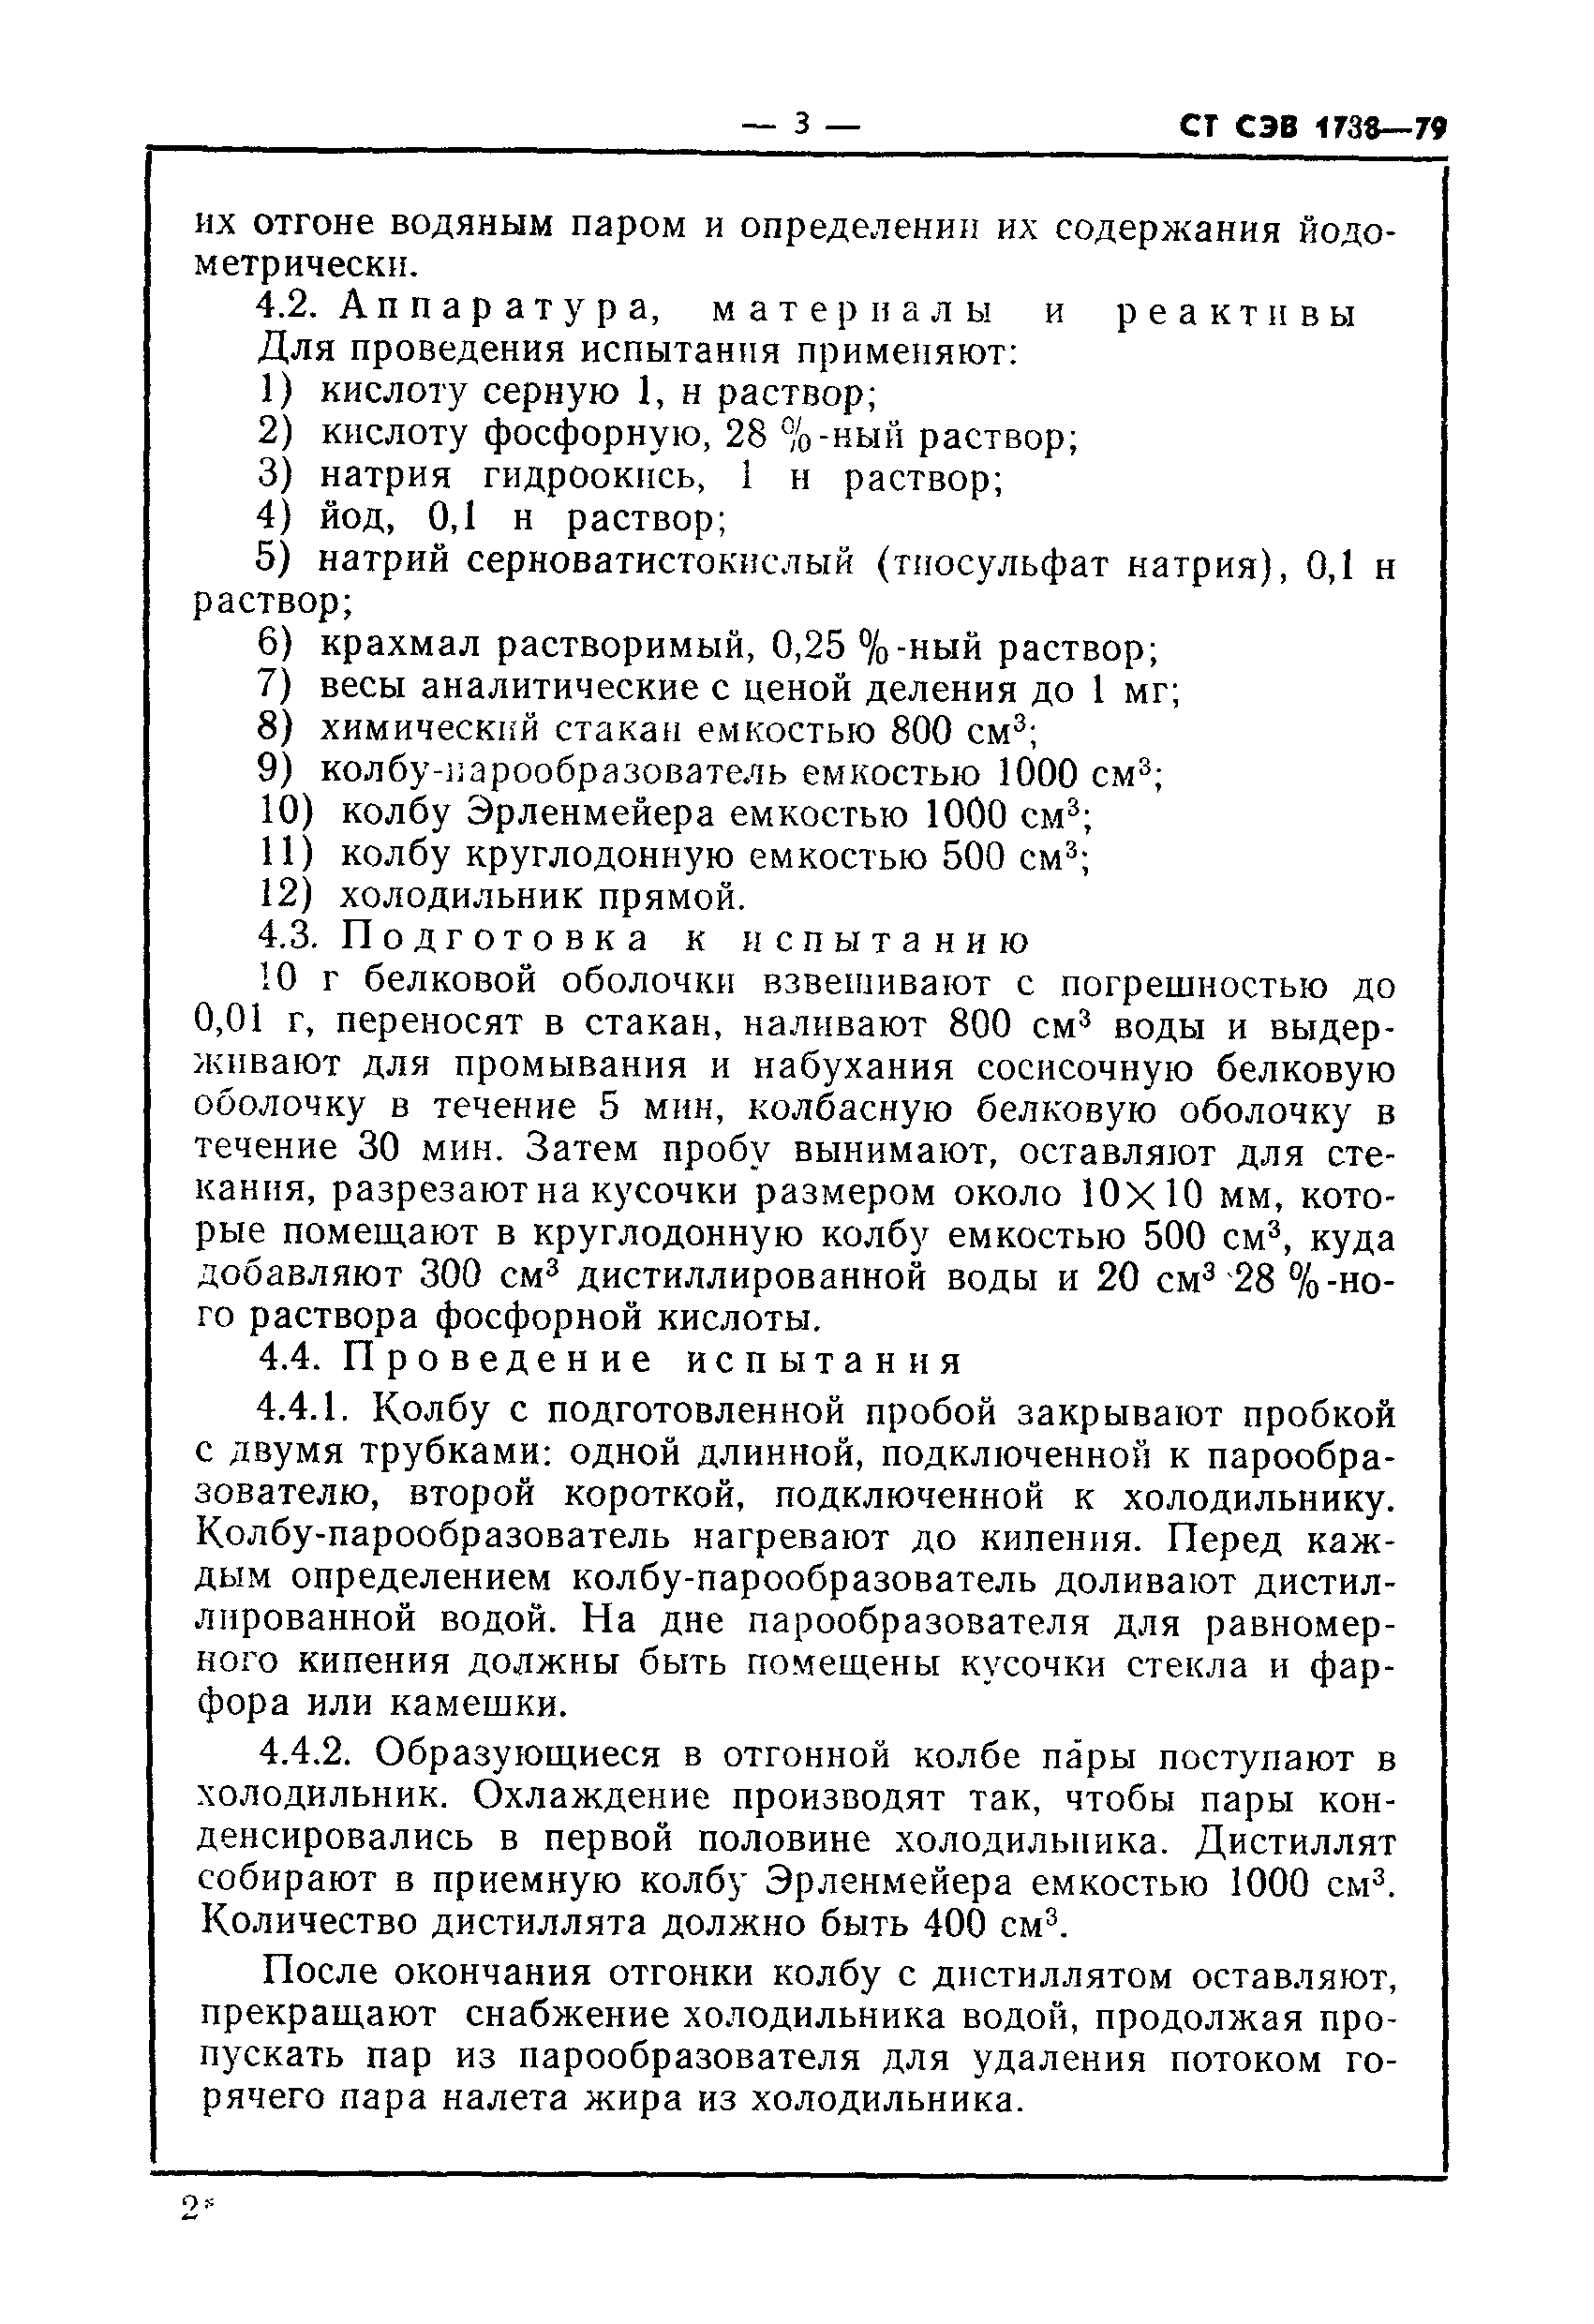 СТ СЭВ 1738-79